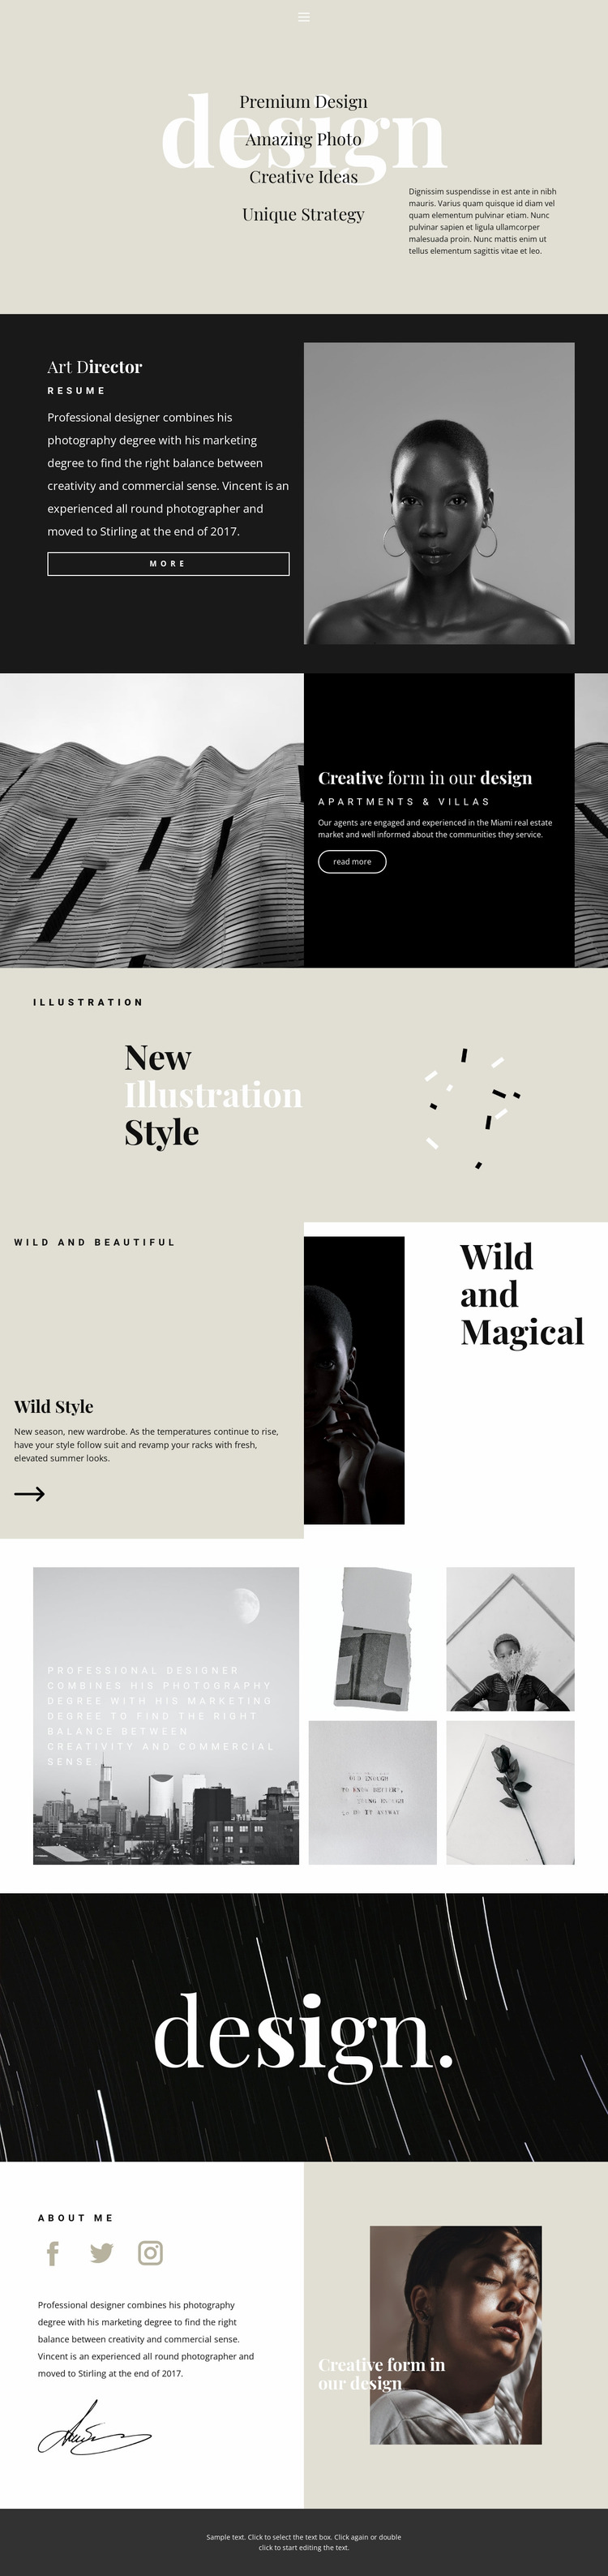 Directions of design studio Website Mockup